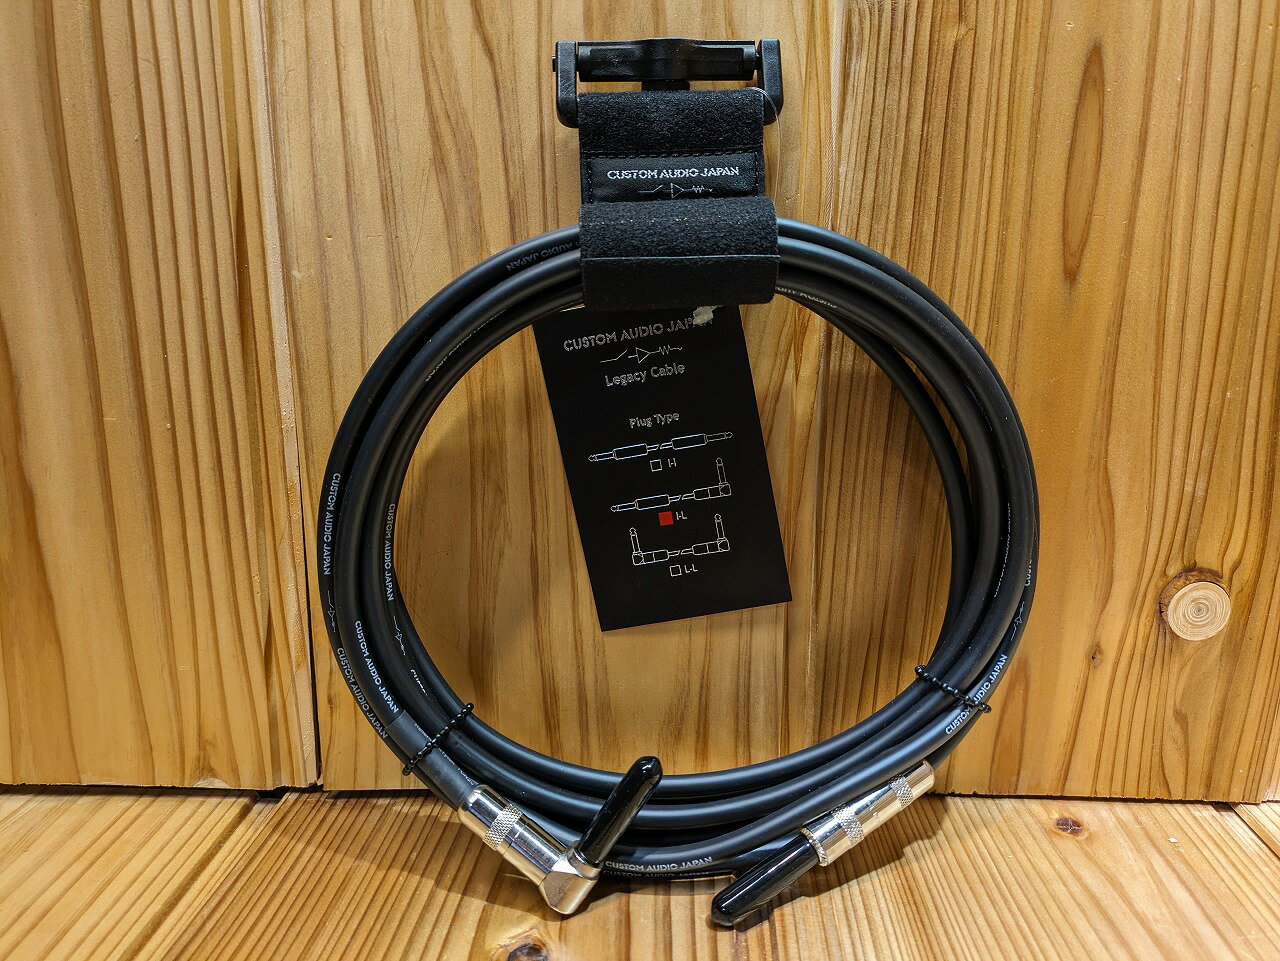 オヤイデ電気 NEO Ecstasy Cable 0.3m L/L[OYAIDE][ネオ][エクスタシーケーブル][Patch Cable,パッチケーブル,シールドケーブル][Electric Guitar,Bass,エレキギター,ベース]